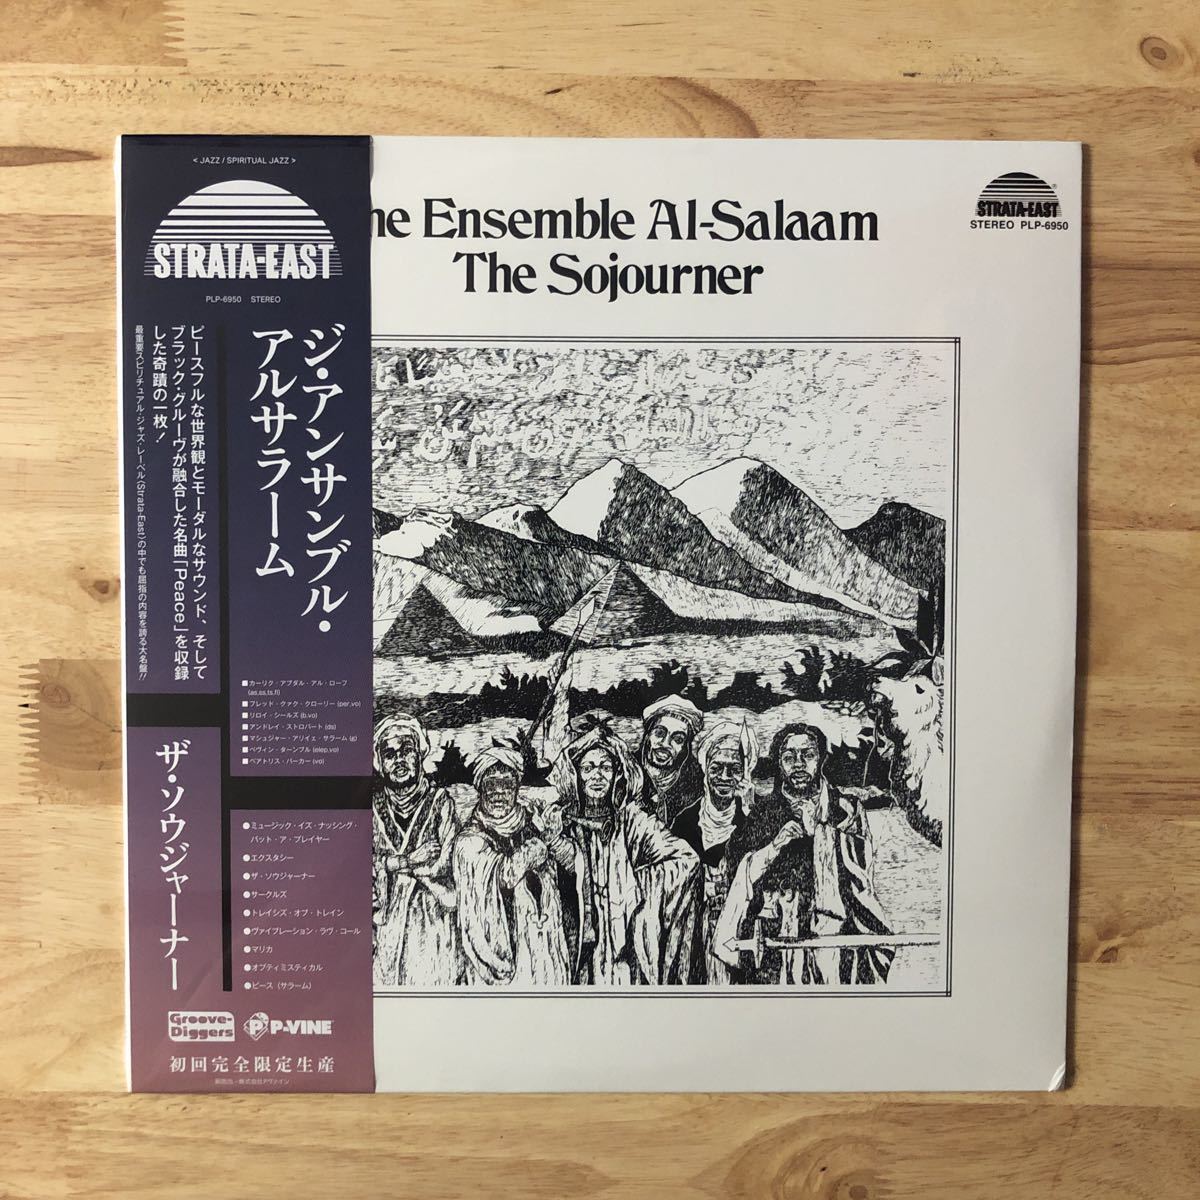 LP THE ENSEMBLE AL-SALAAM  ансамбль  *  ... *  .../SOJOURNER[STRATA-EAST: первый раз  производство  пластинка :'74 год  звукозапись   ячейка ... *   pro ... касательно ... произведение  ]